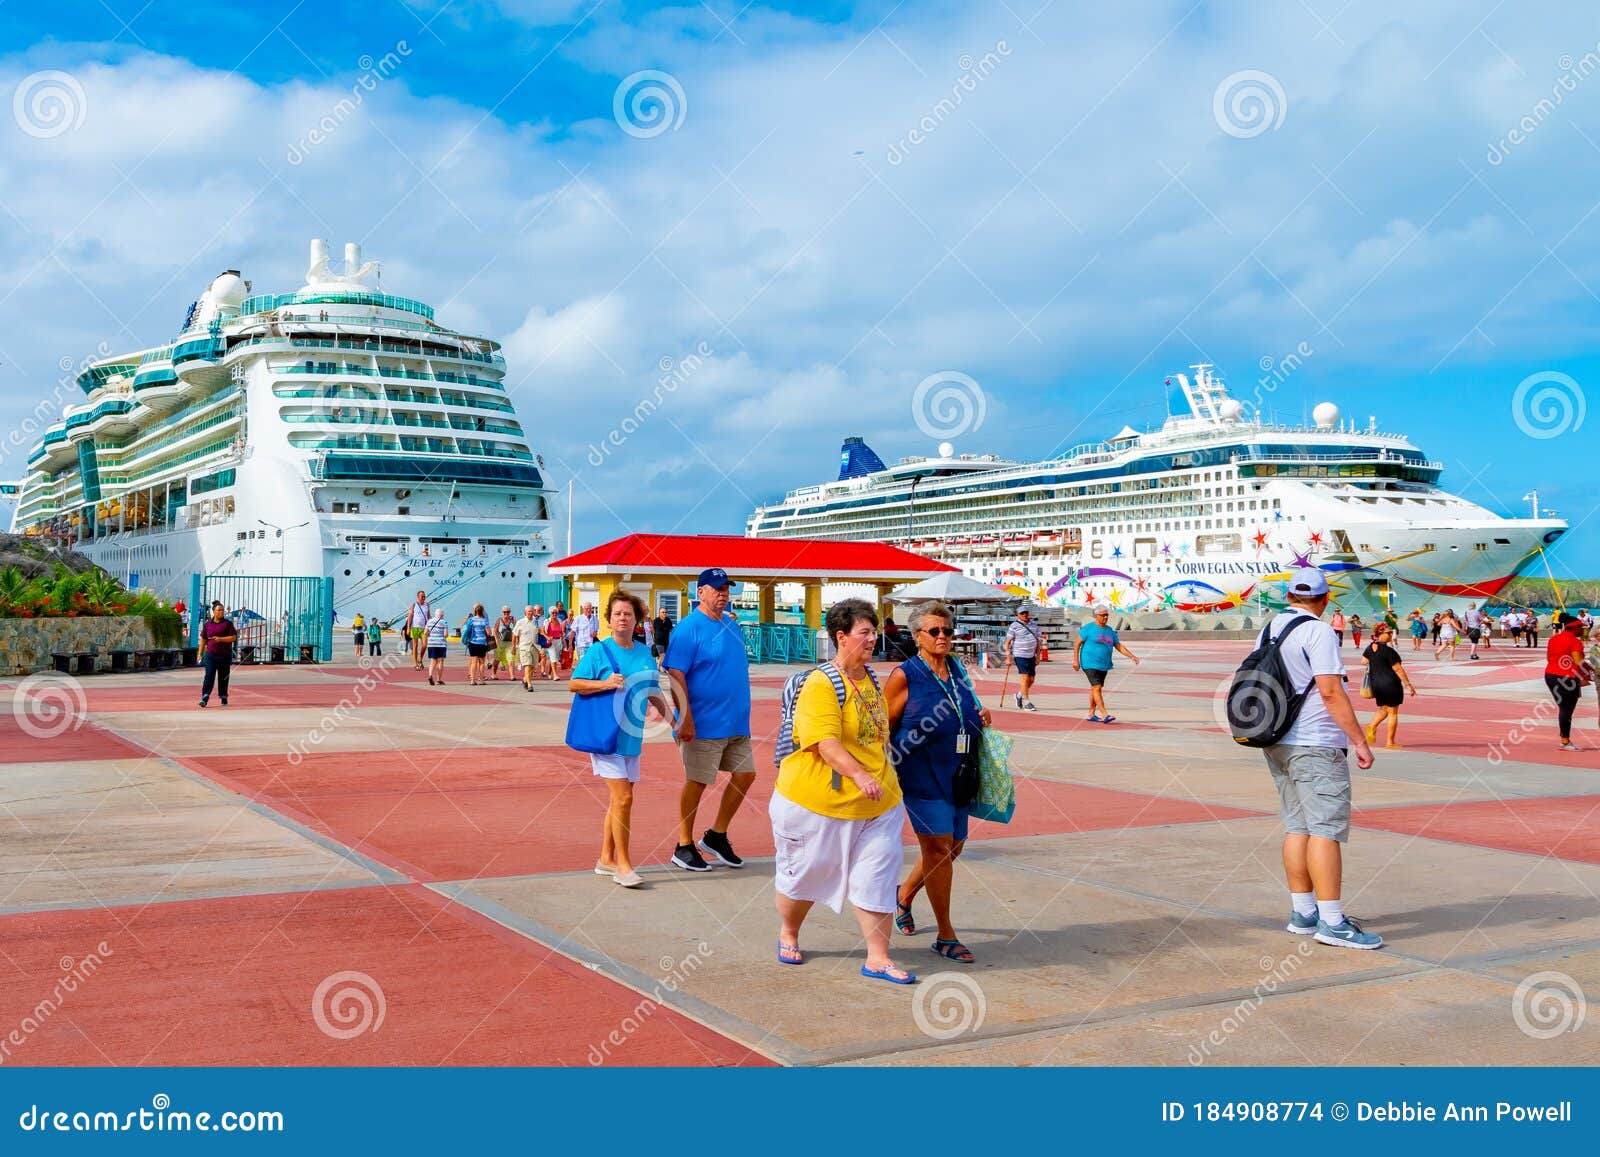 st maarten cruise ship arrivals